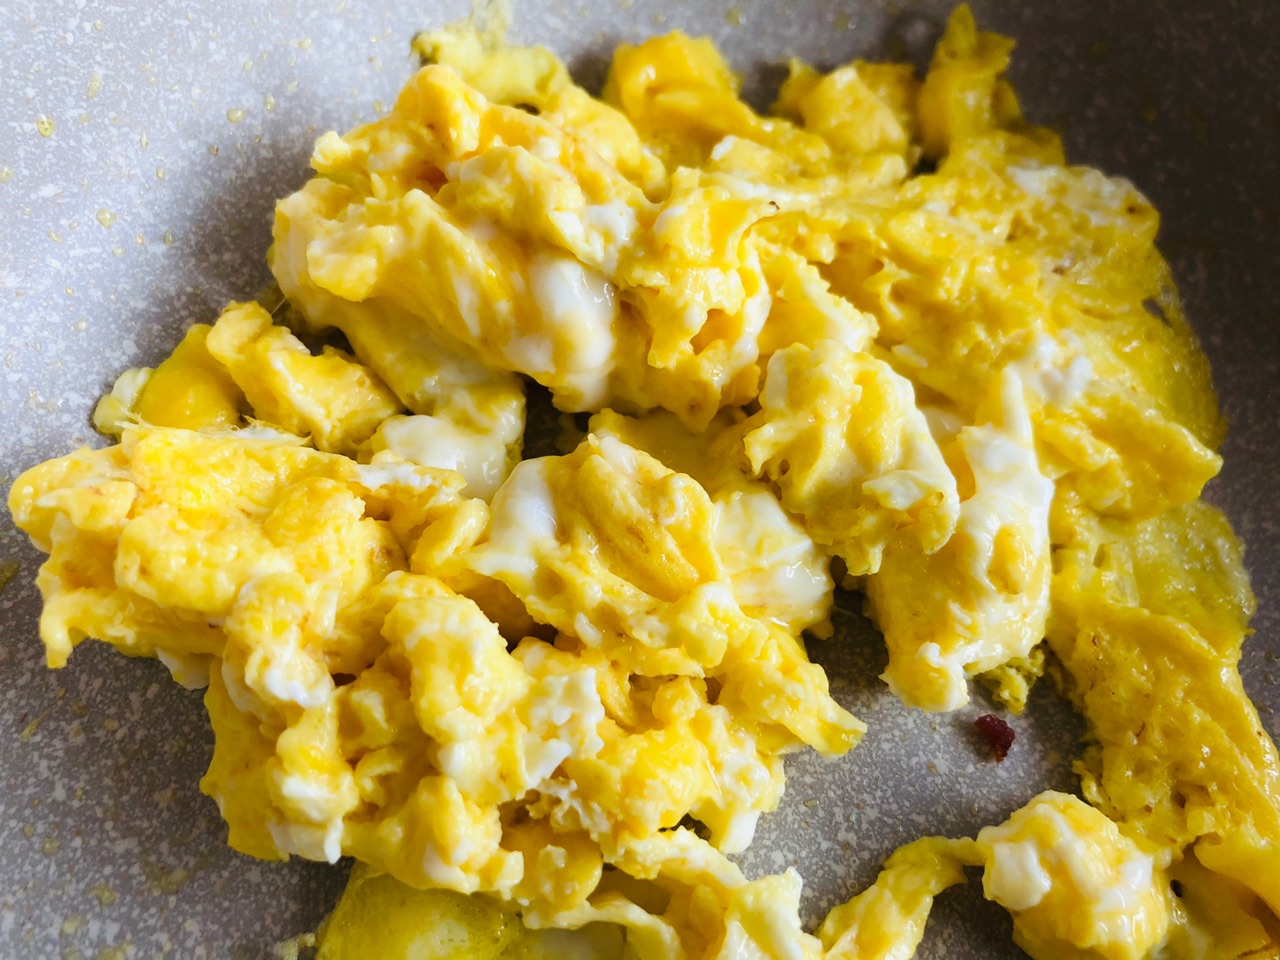 蛋 煎鸡蛋 培根 - Pixabay上的免费照片 - Pixabay